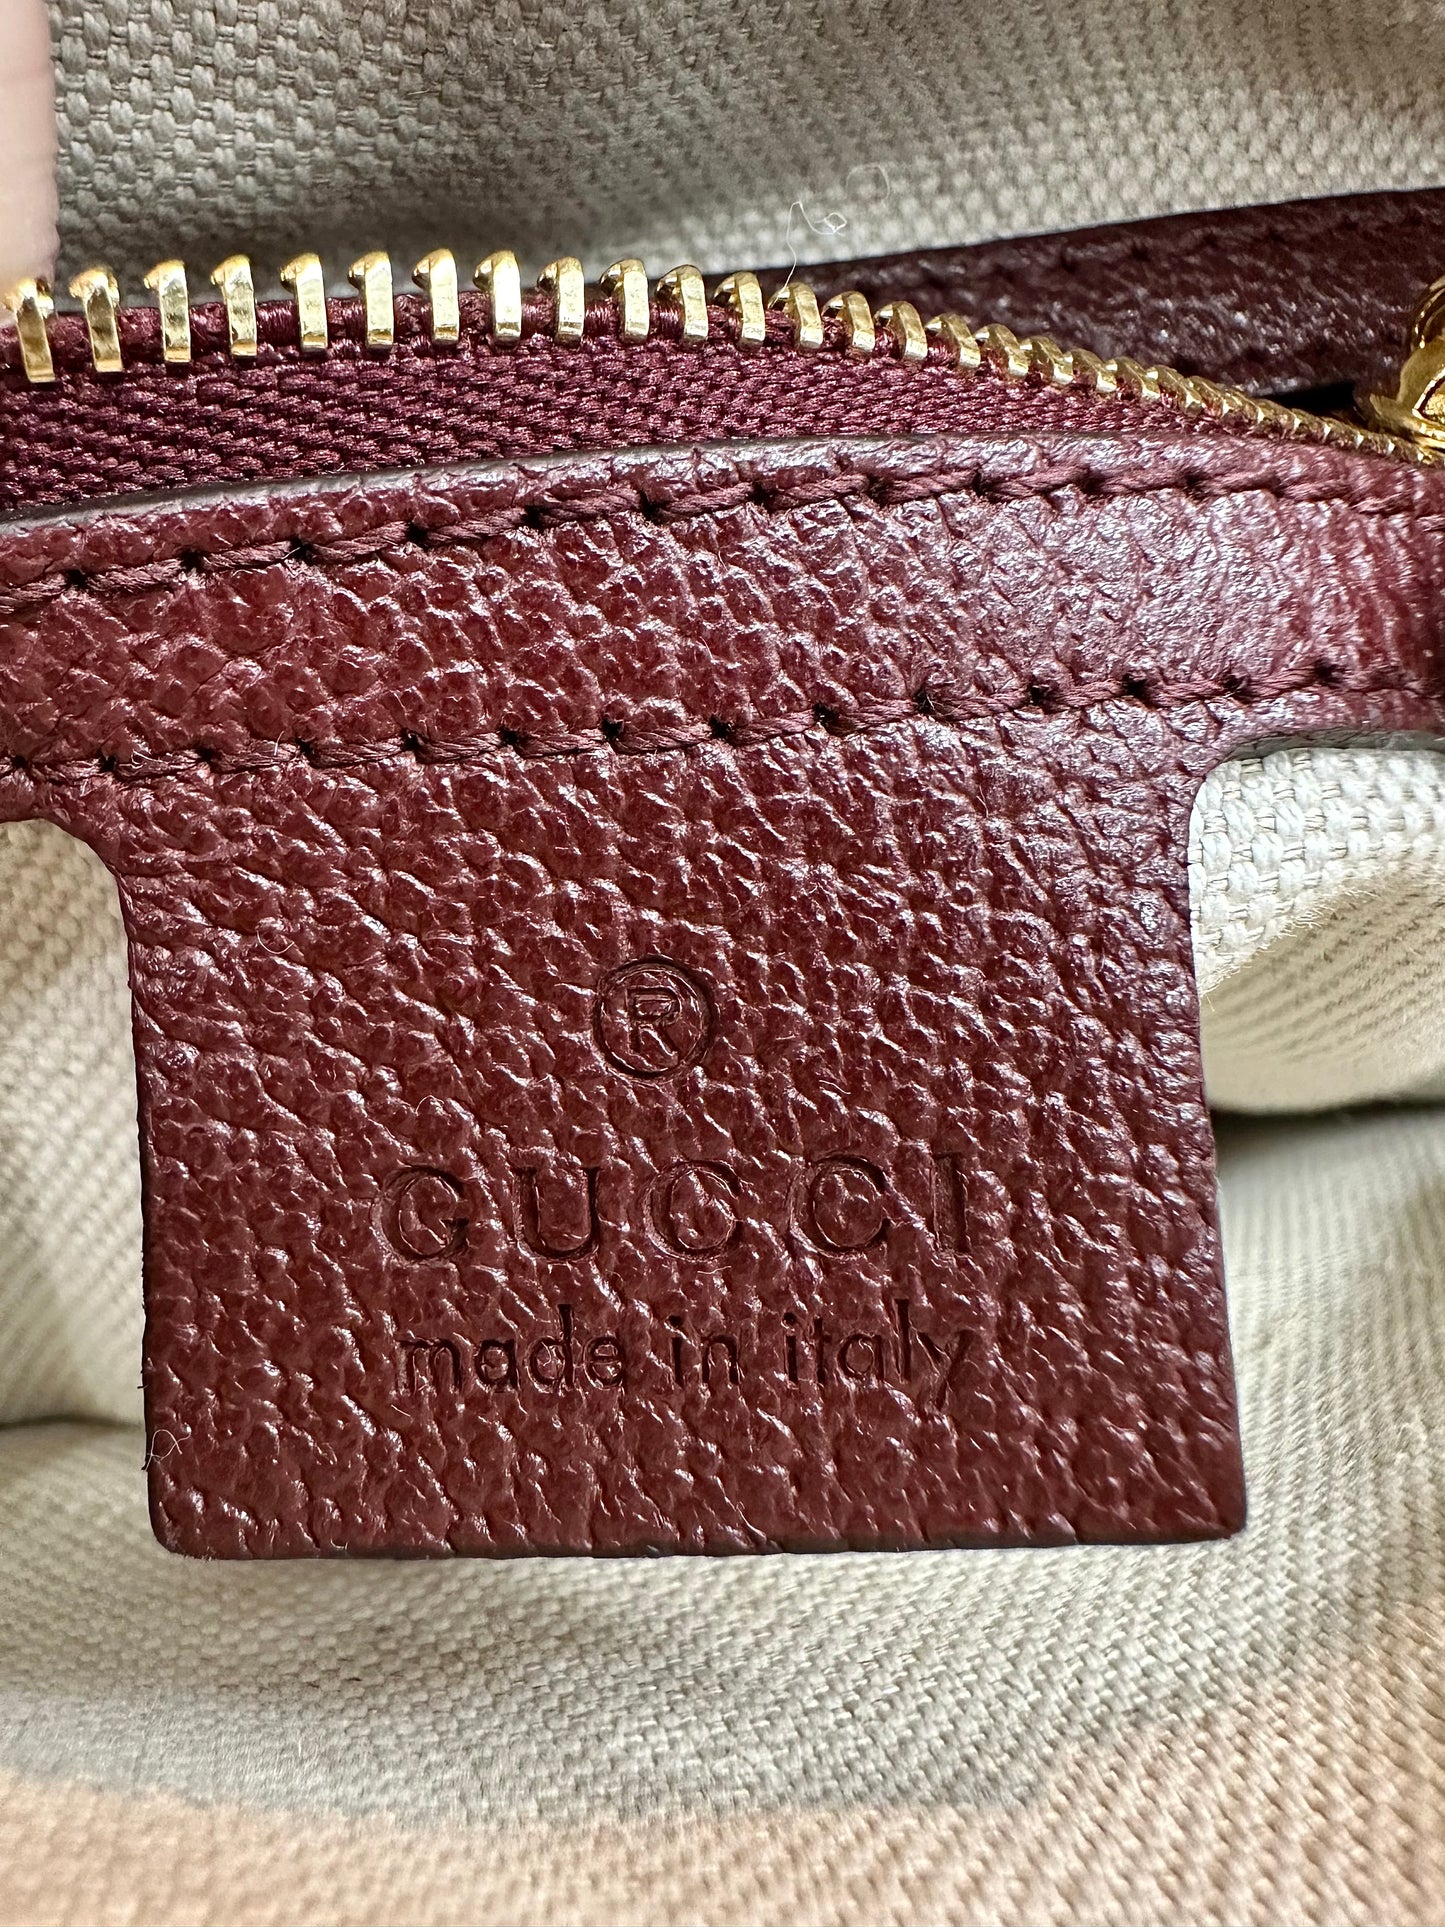 Burgundy Gucci logo leather tag inside